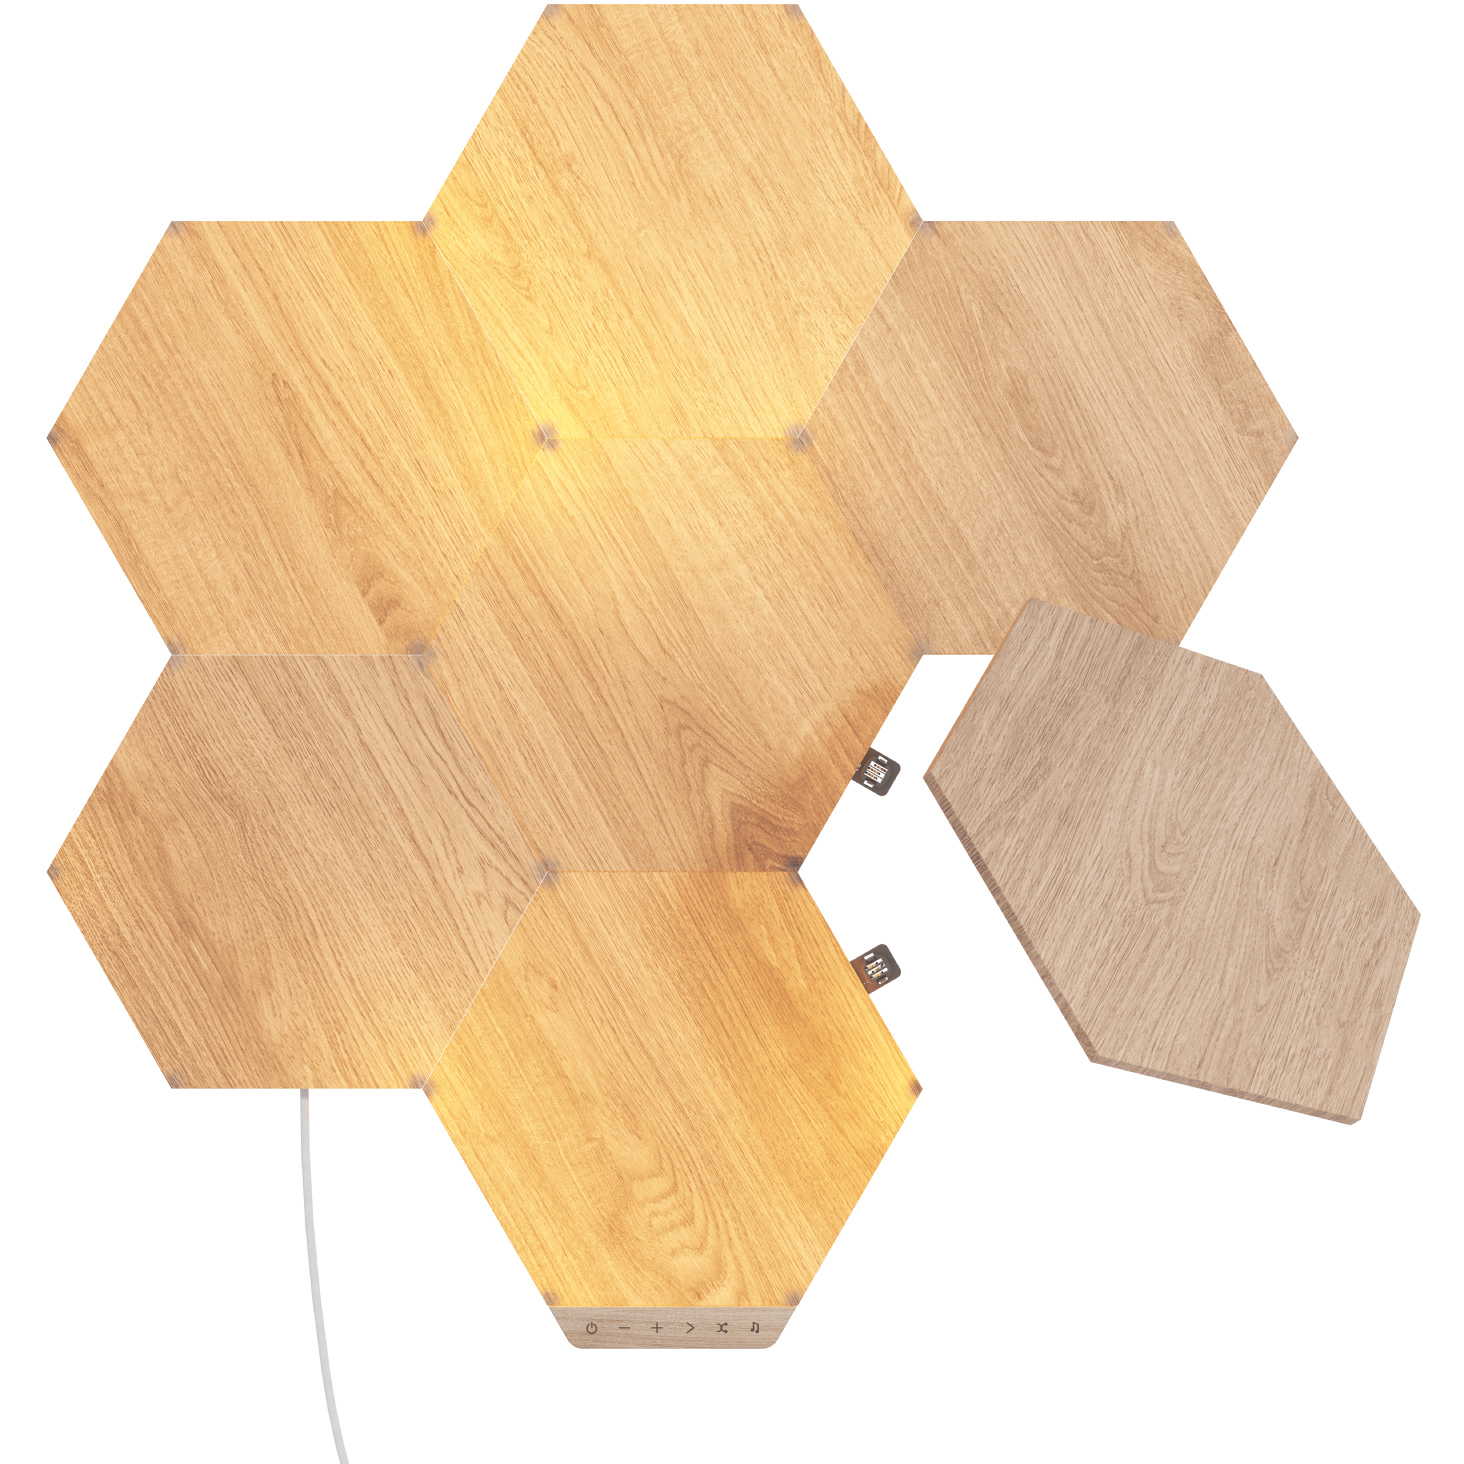 840102701678 Nanoleaf Elements Hexagons Starter Kit 7PK Hus & Have,Smart Home,Smart belysning 15600002880 NL52-K-7002HB-7PK